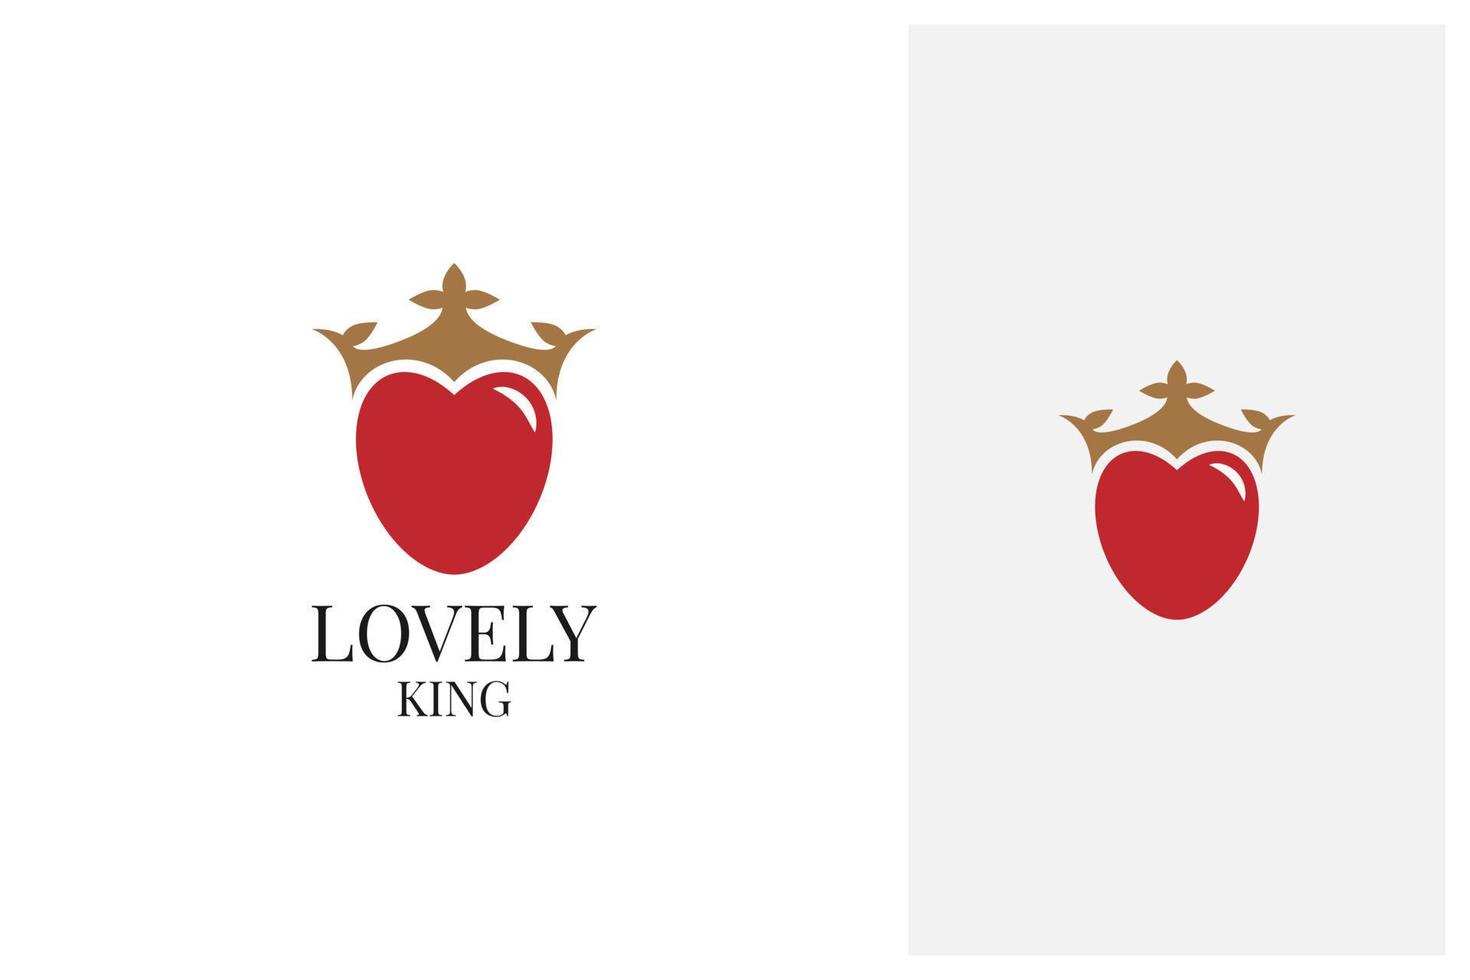 diseño del logo del rey del corazón y la corona vector